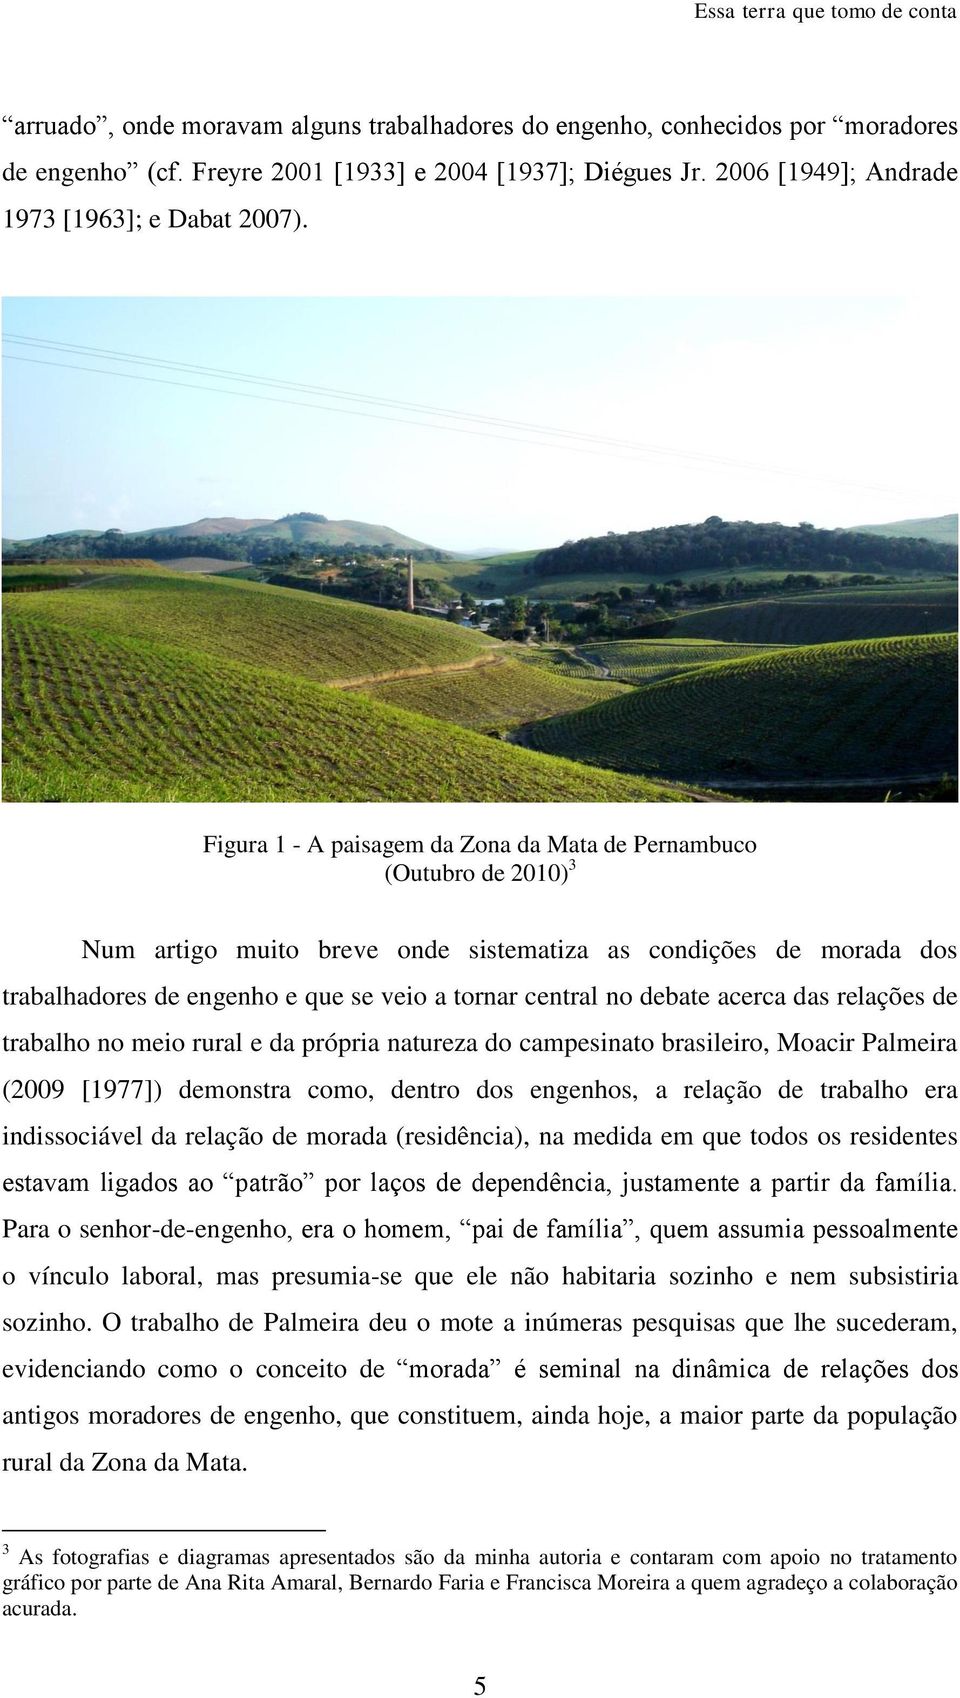 debate acerca das relações de trabalho no meio rural e da própria natureza do campesinato brasileiro, Moacir Palmeira (2009 [1977]) demonstra como, dentro dos engenhos, a relação de trabalho era